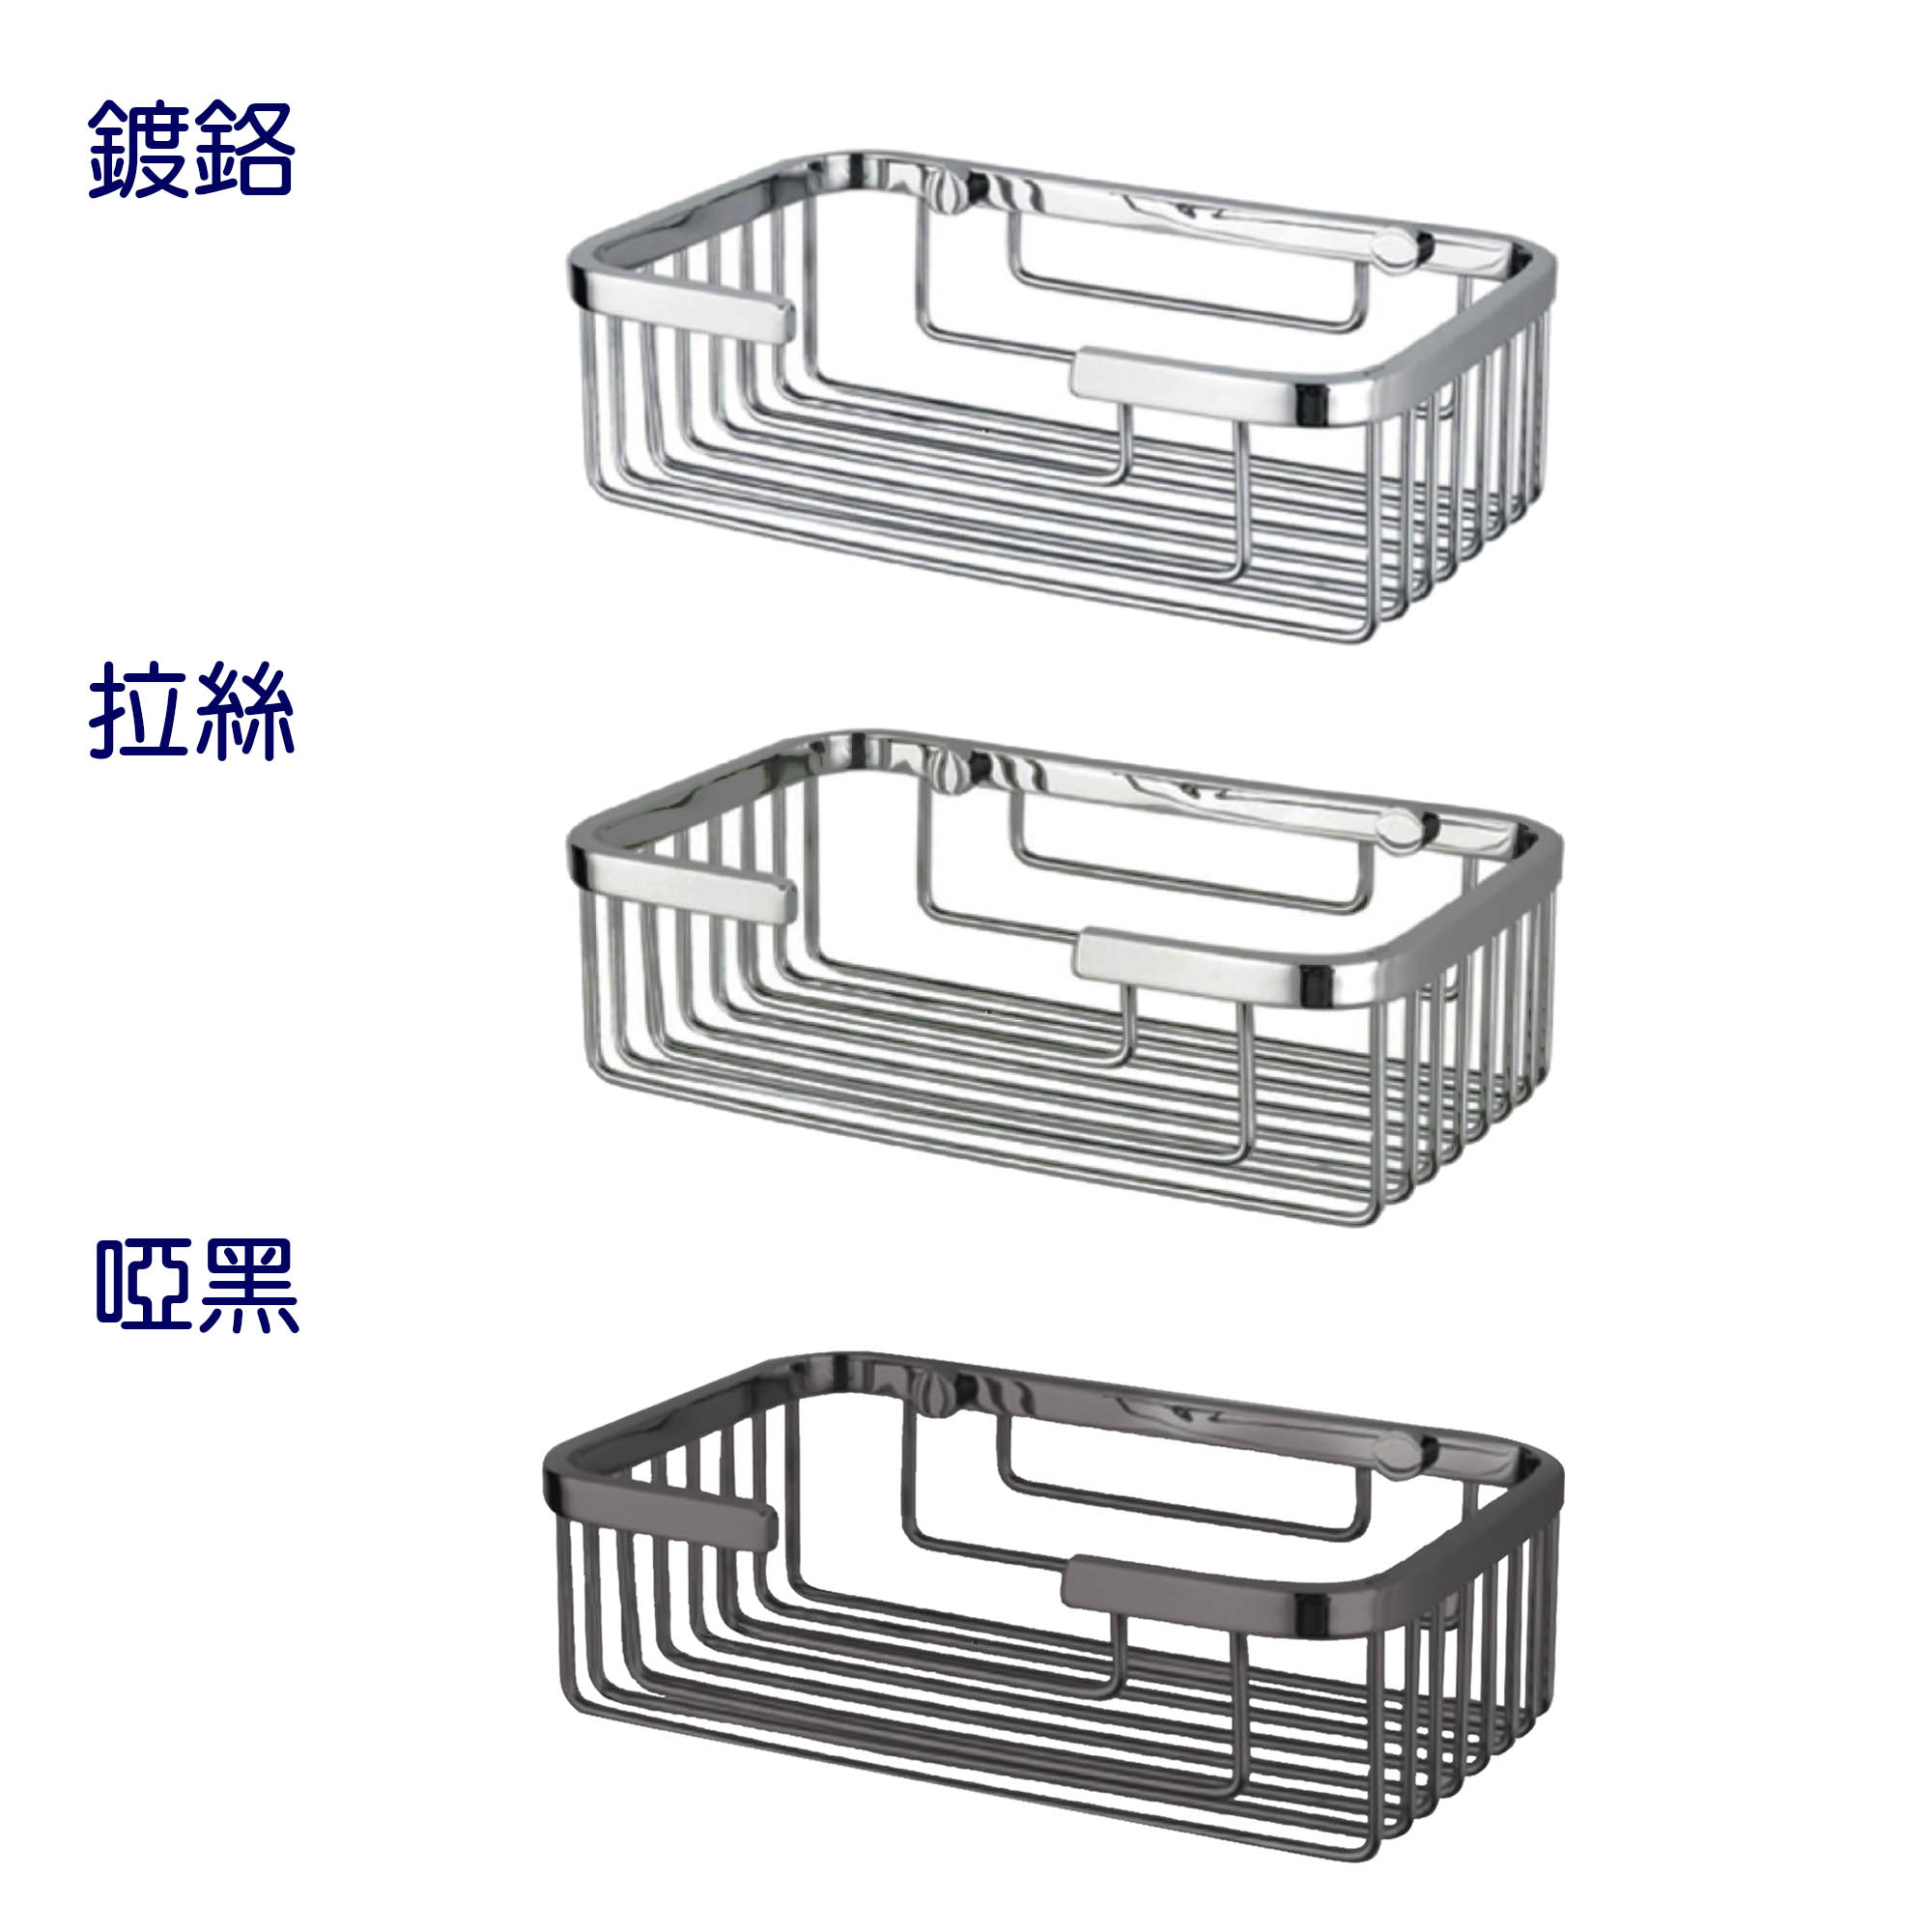 宗曄-BAS121-1 不鏽鋼方形置物籃-共3款